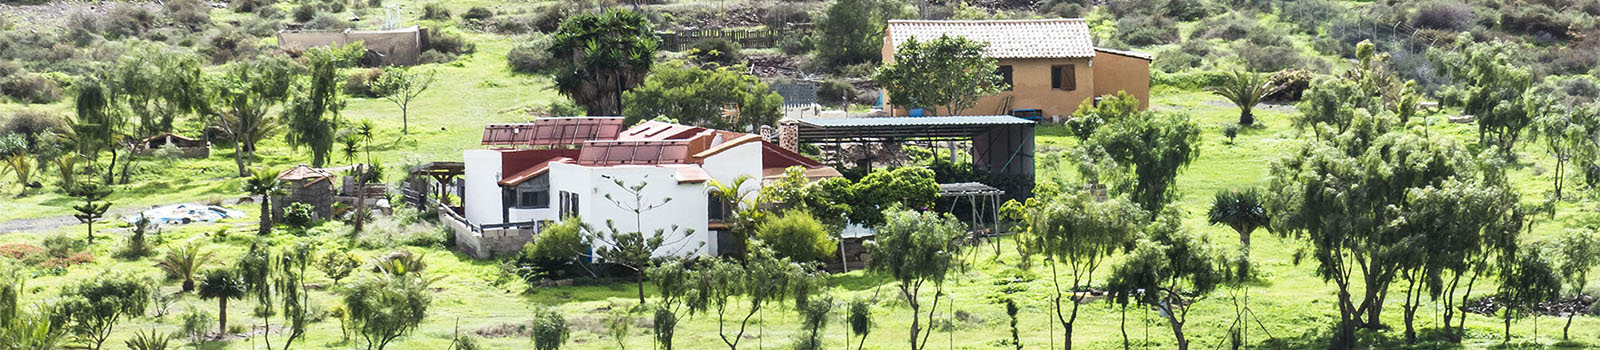 Die Gavias auf Fuerteventura – Bewässerungs-Technik der Berber in Nordafrika.